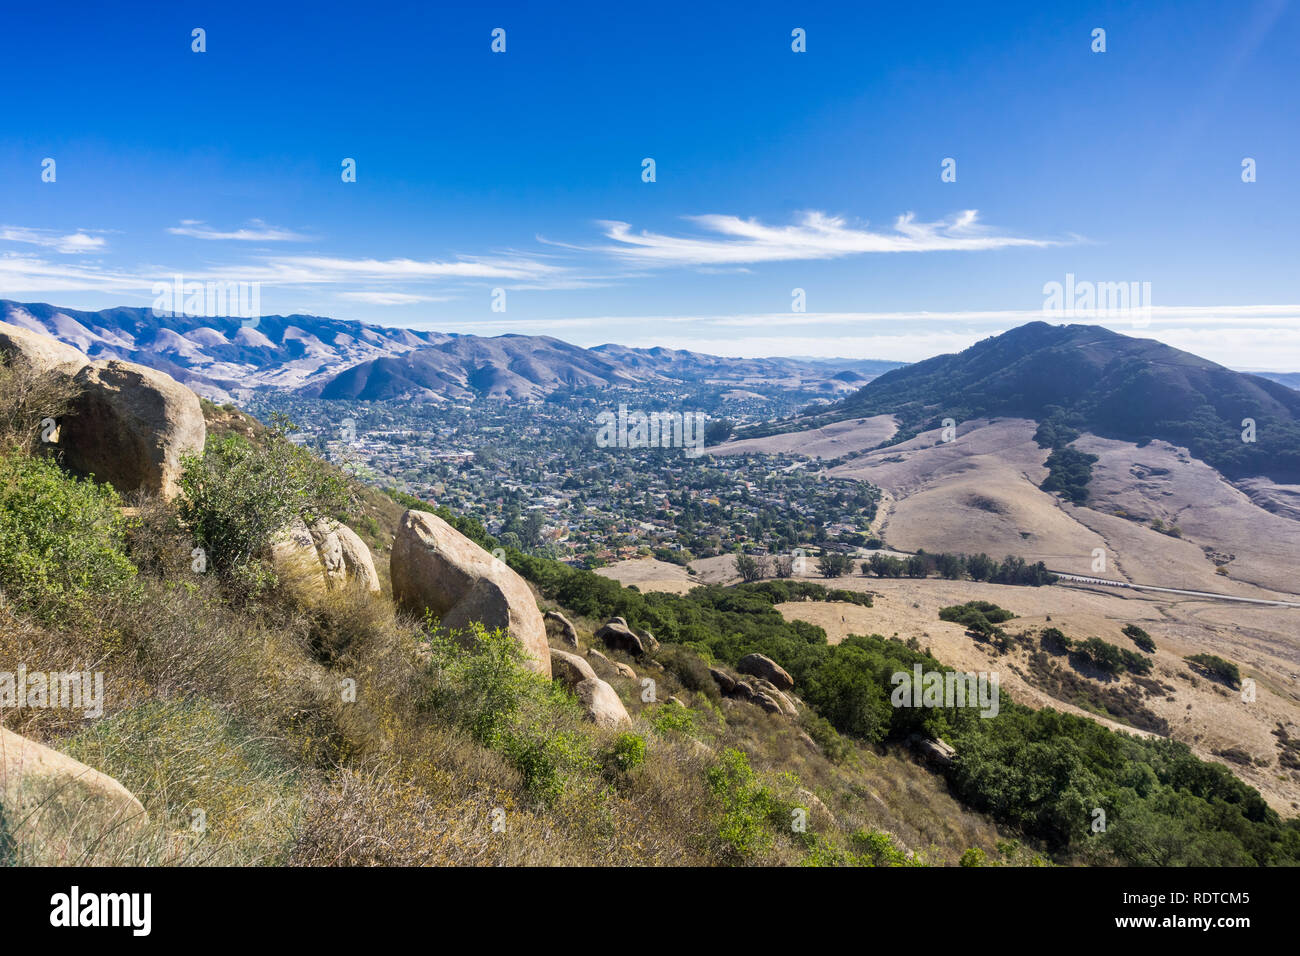 View towards San Luis Obispo taken from the trail to Bisho Peak, California Stock Photo